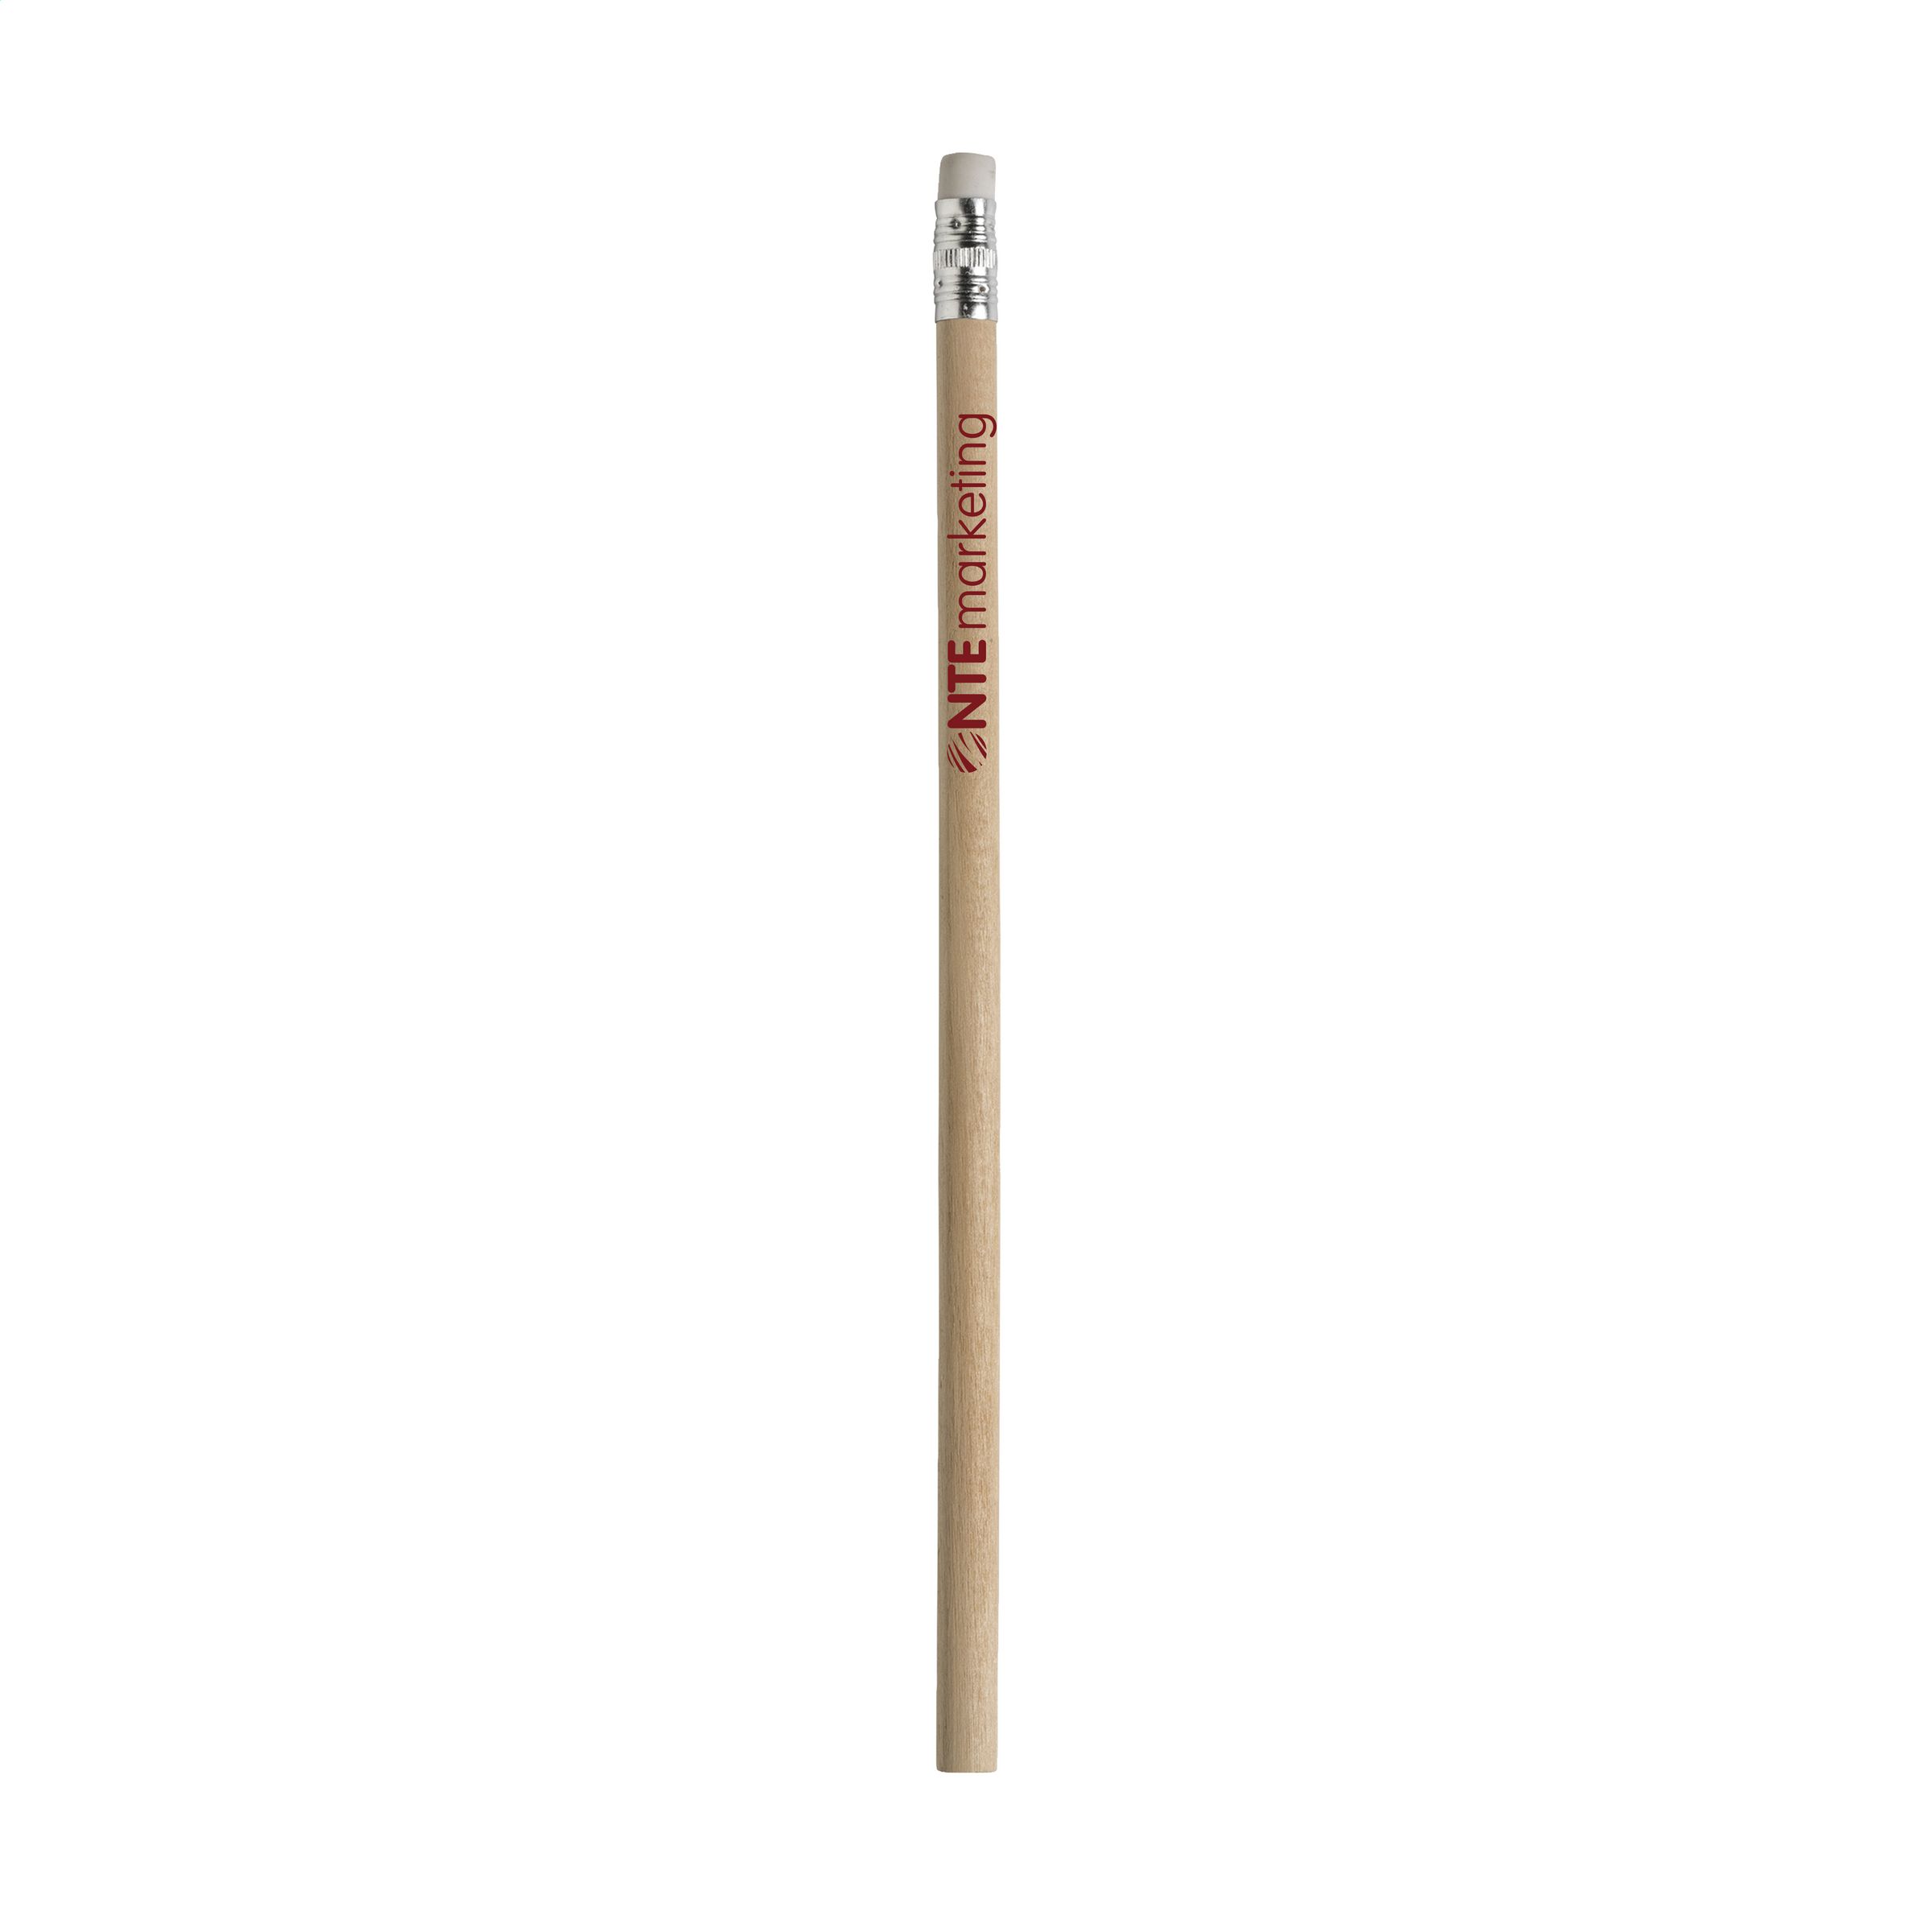 Non verniciata matita in legno HB non affilata con gomma per cancellare - Elland